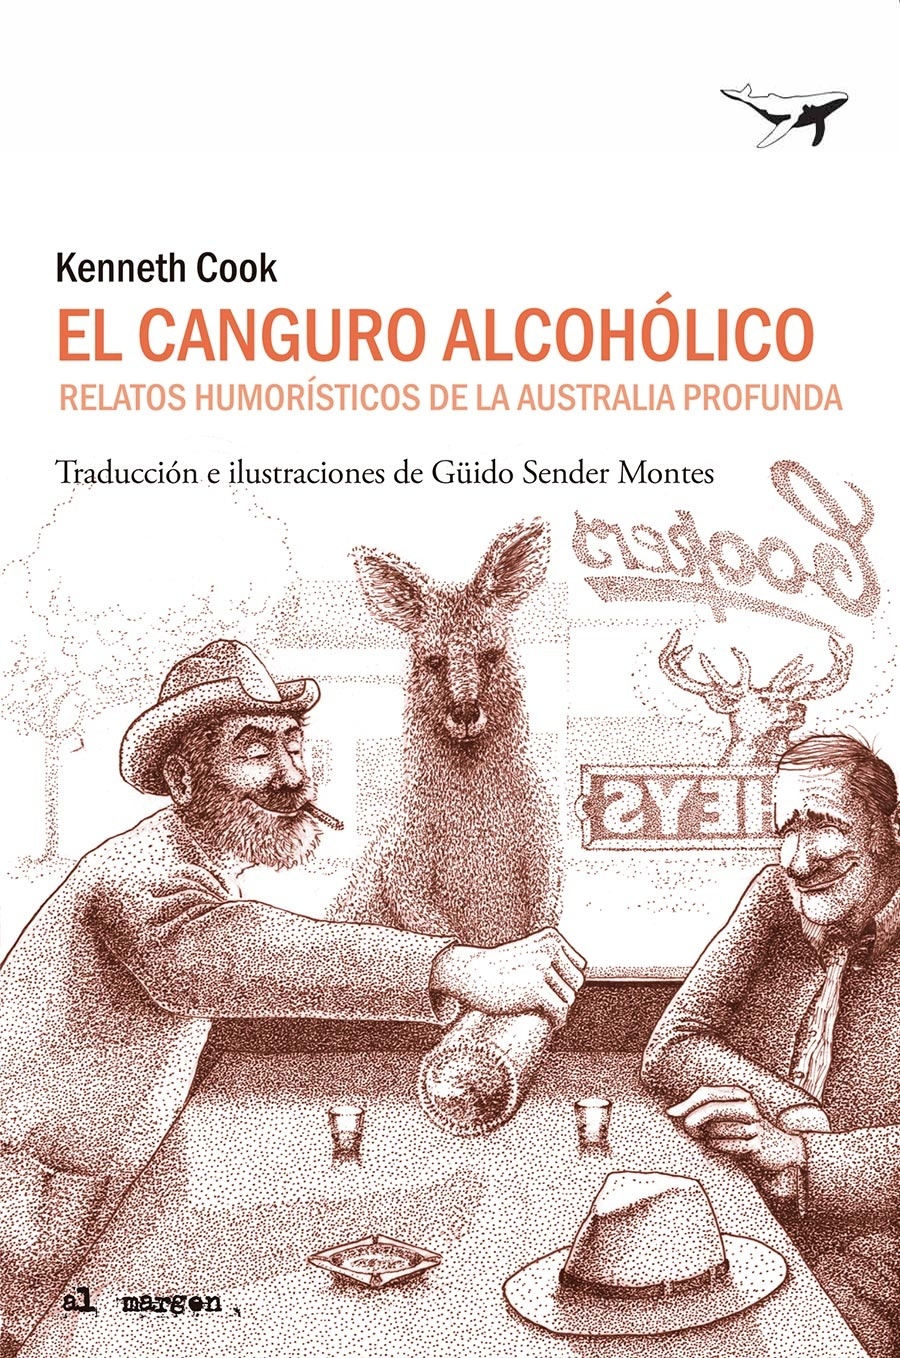 Canguro alcohólico, El "Relatos humorísticos de la Australia profunda"